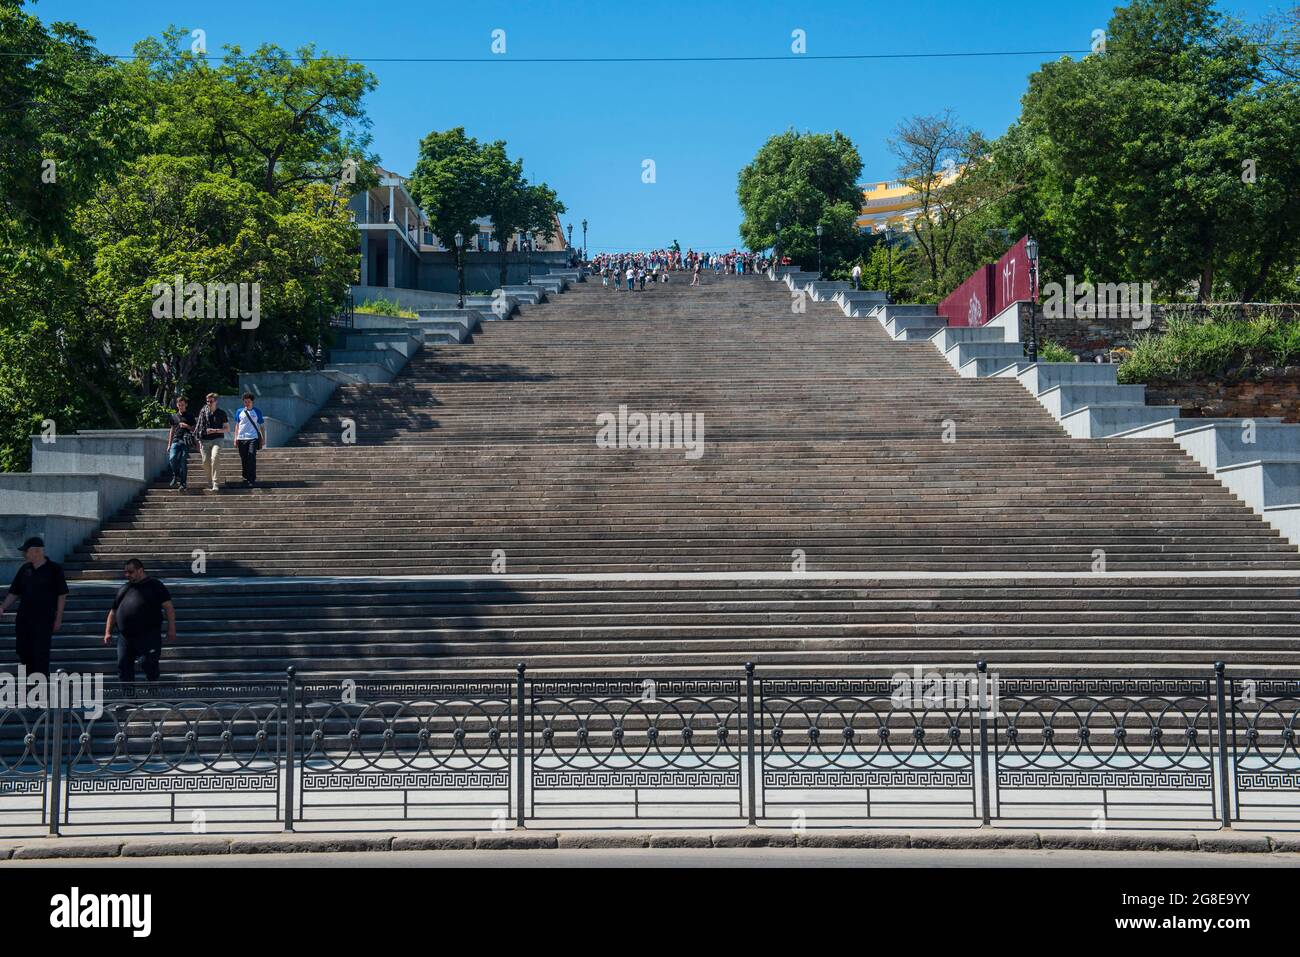 Potemkin Stairs, or Potemkin Steps, Odessa, Black sea, Ukraine Stock Photo